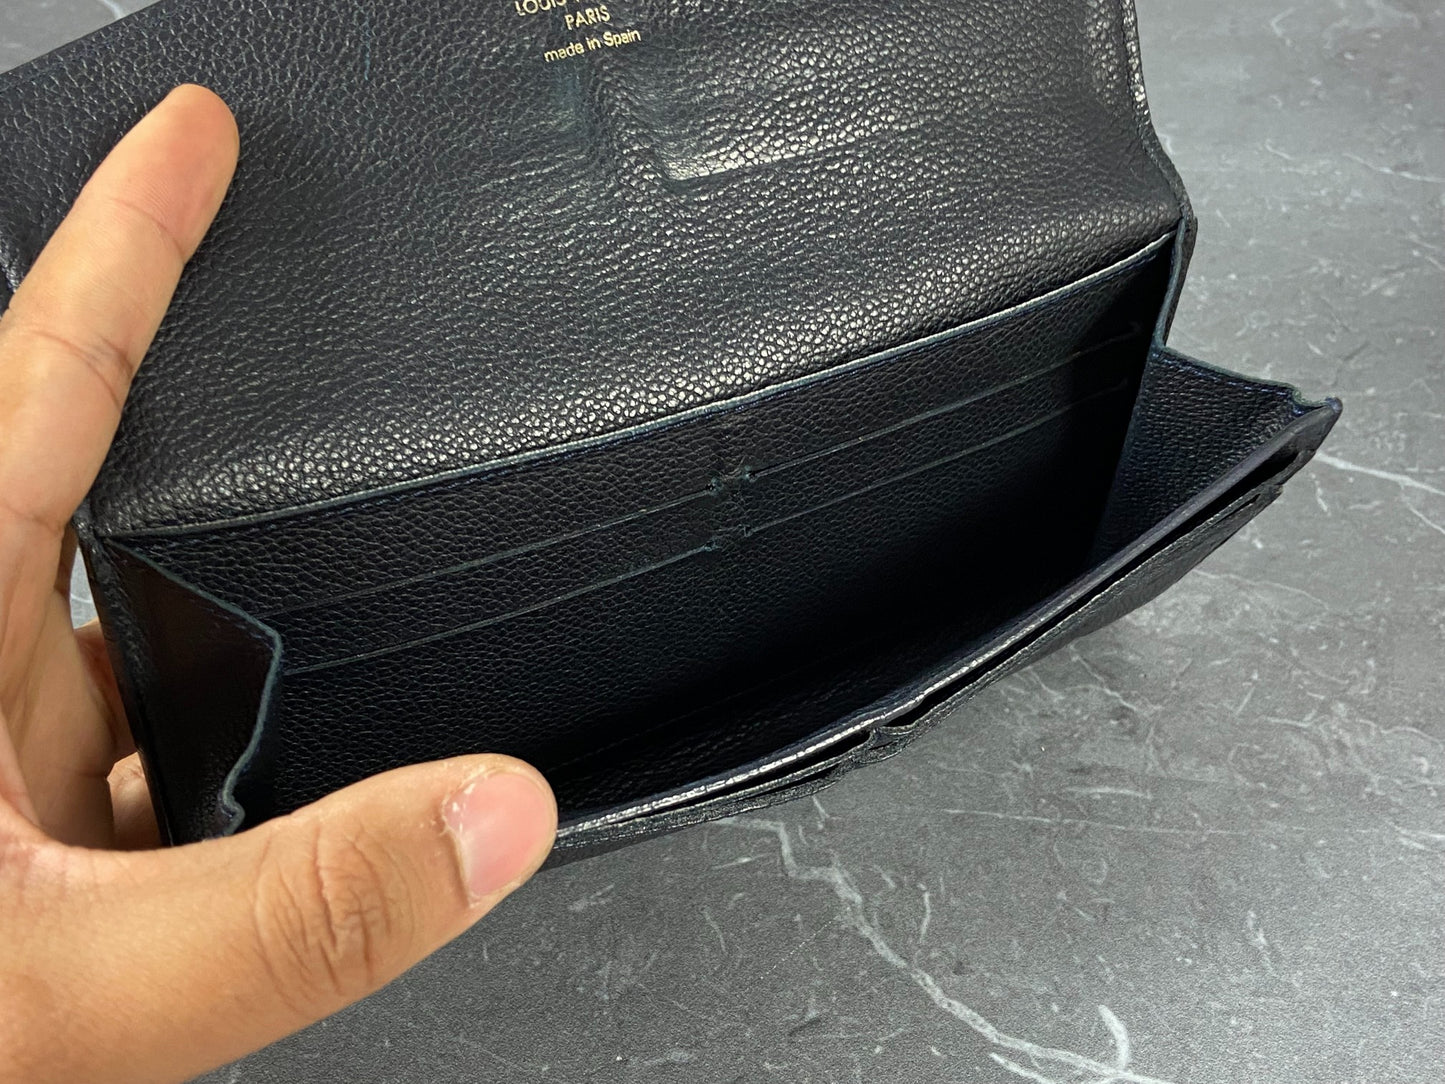 Louis Vuitton Curieuse Wallet Black Empreinte Leather